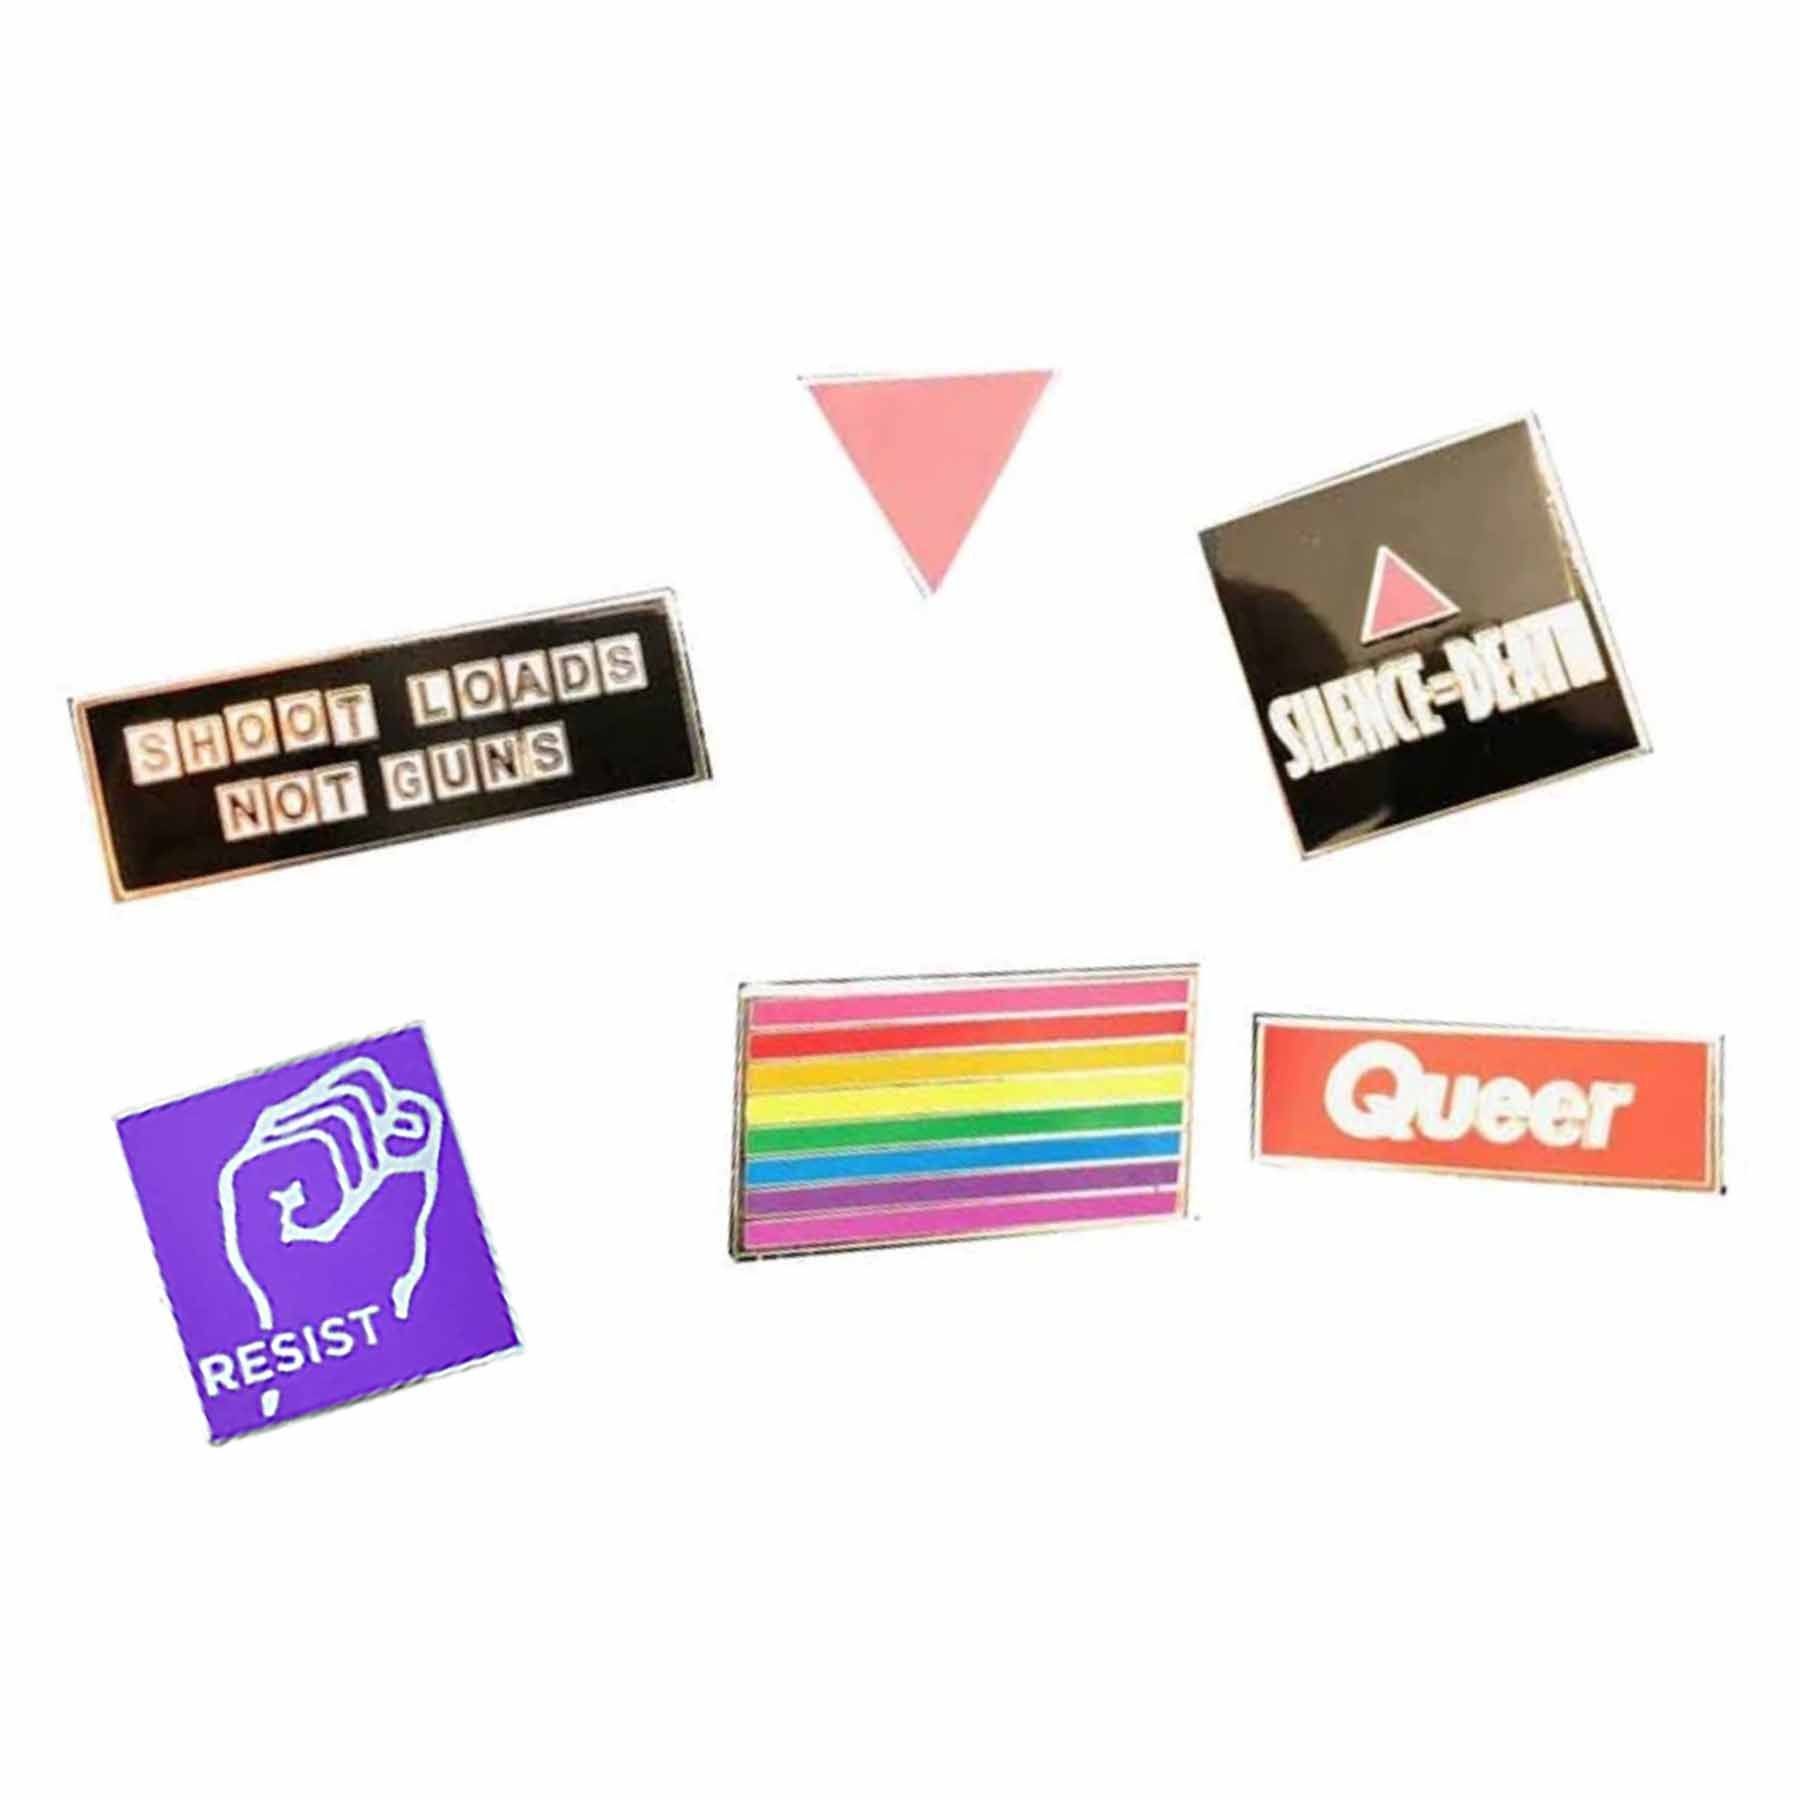 Queer pin pack adams nest pink triangles silence equals death shoot loads not guns gilbert baker rainbow resist fist pins